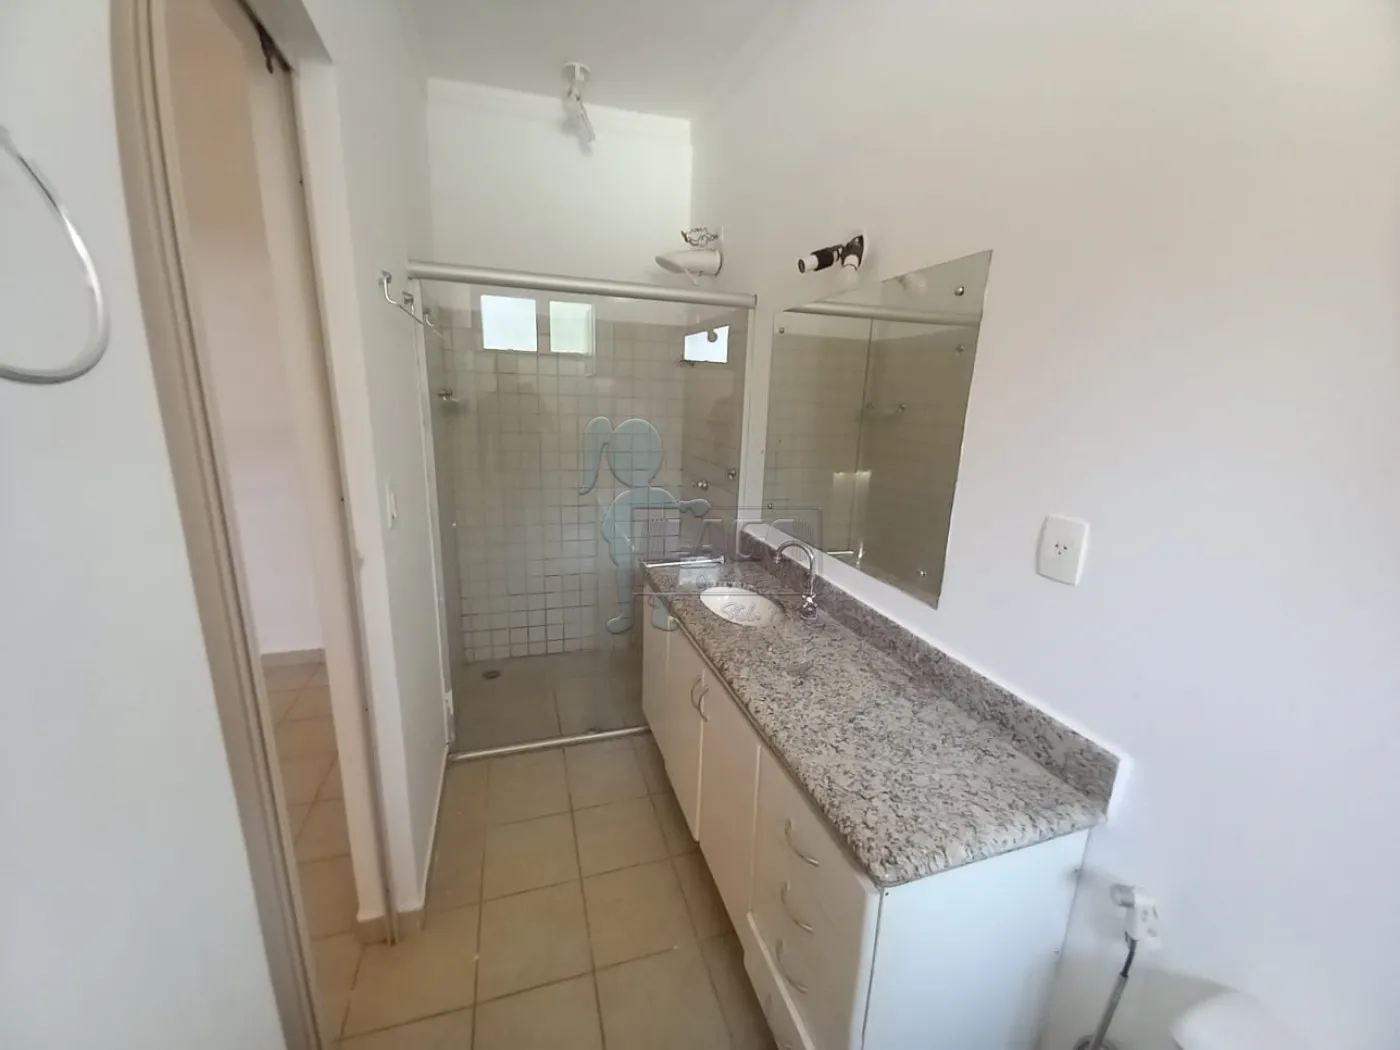 Alugar Apartamento / Kitnet em Ribeirão Preto R$ 850,00 - Foto 5